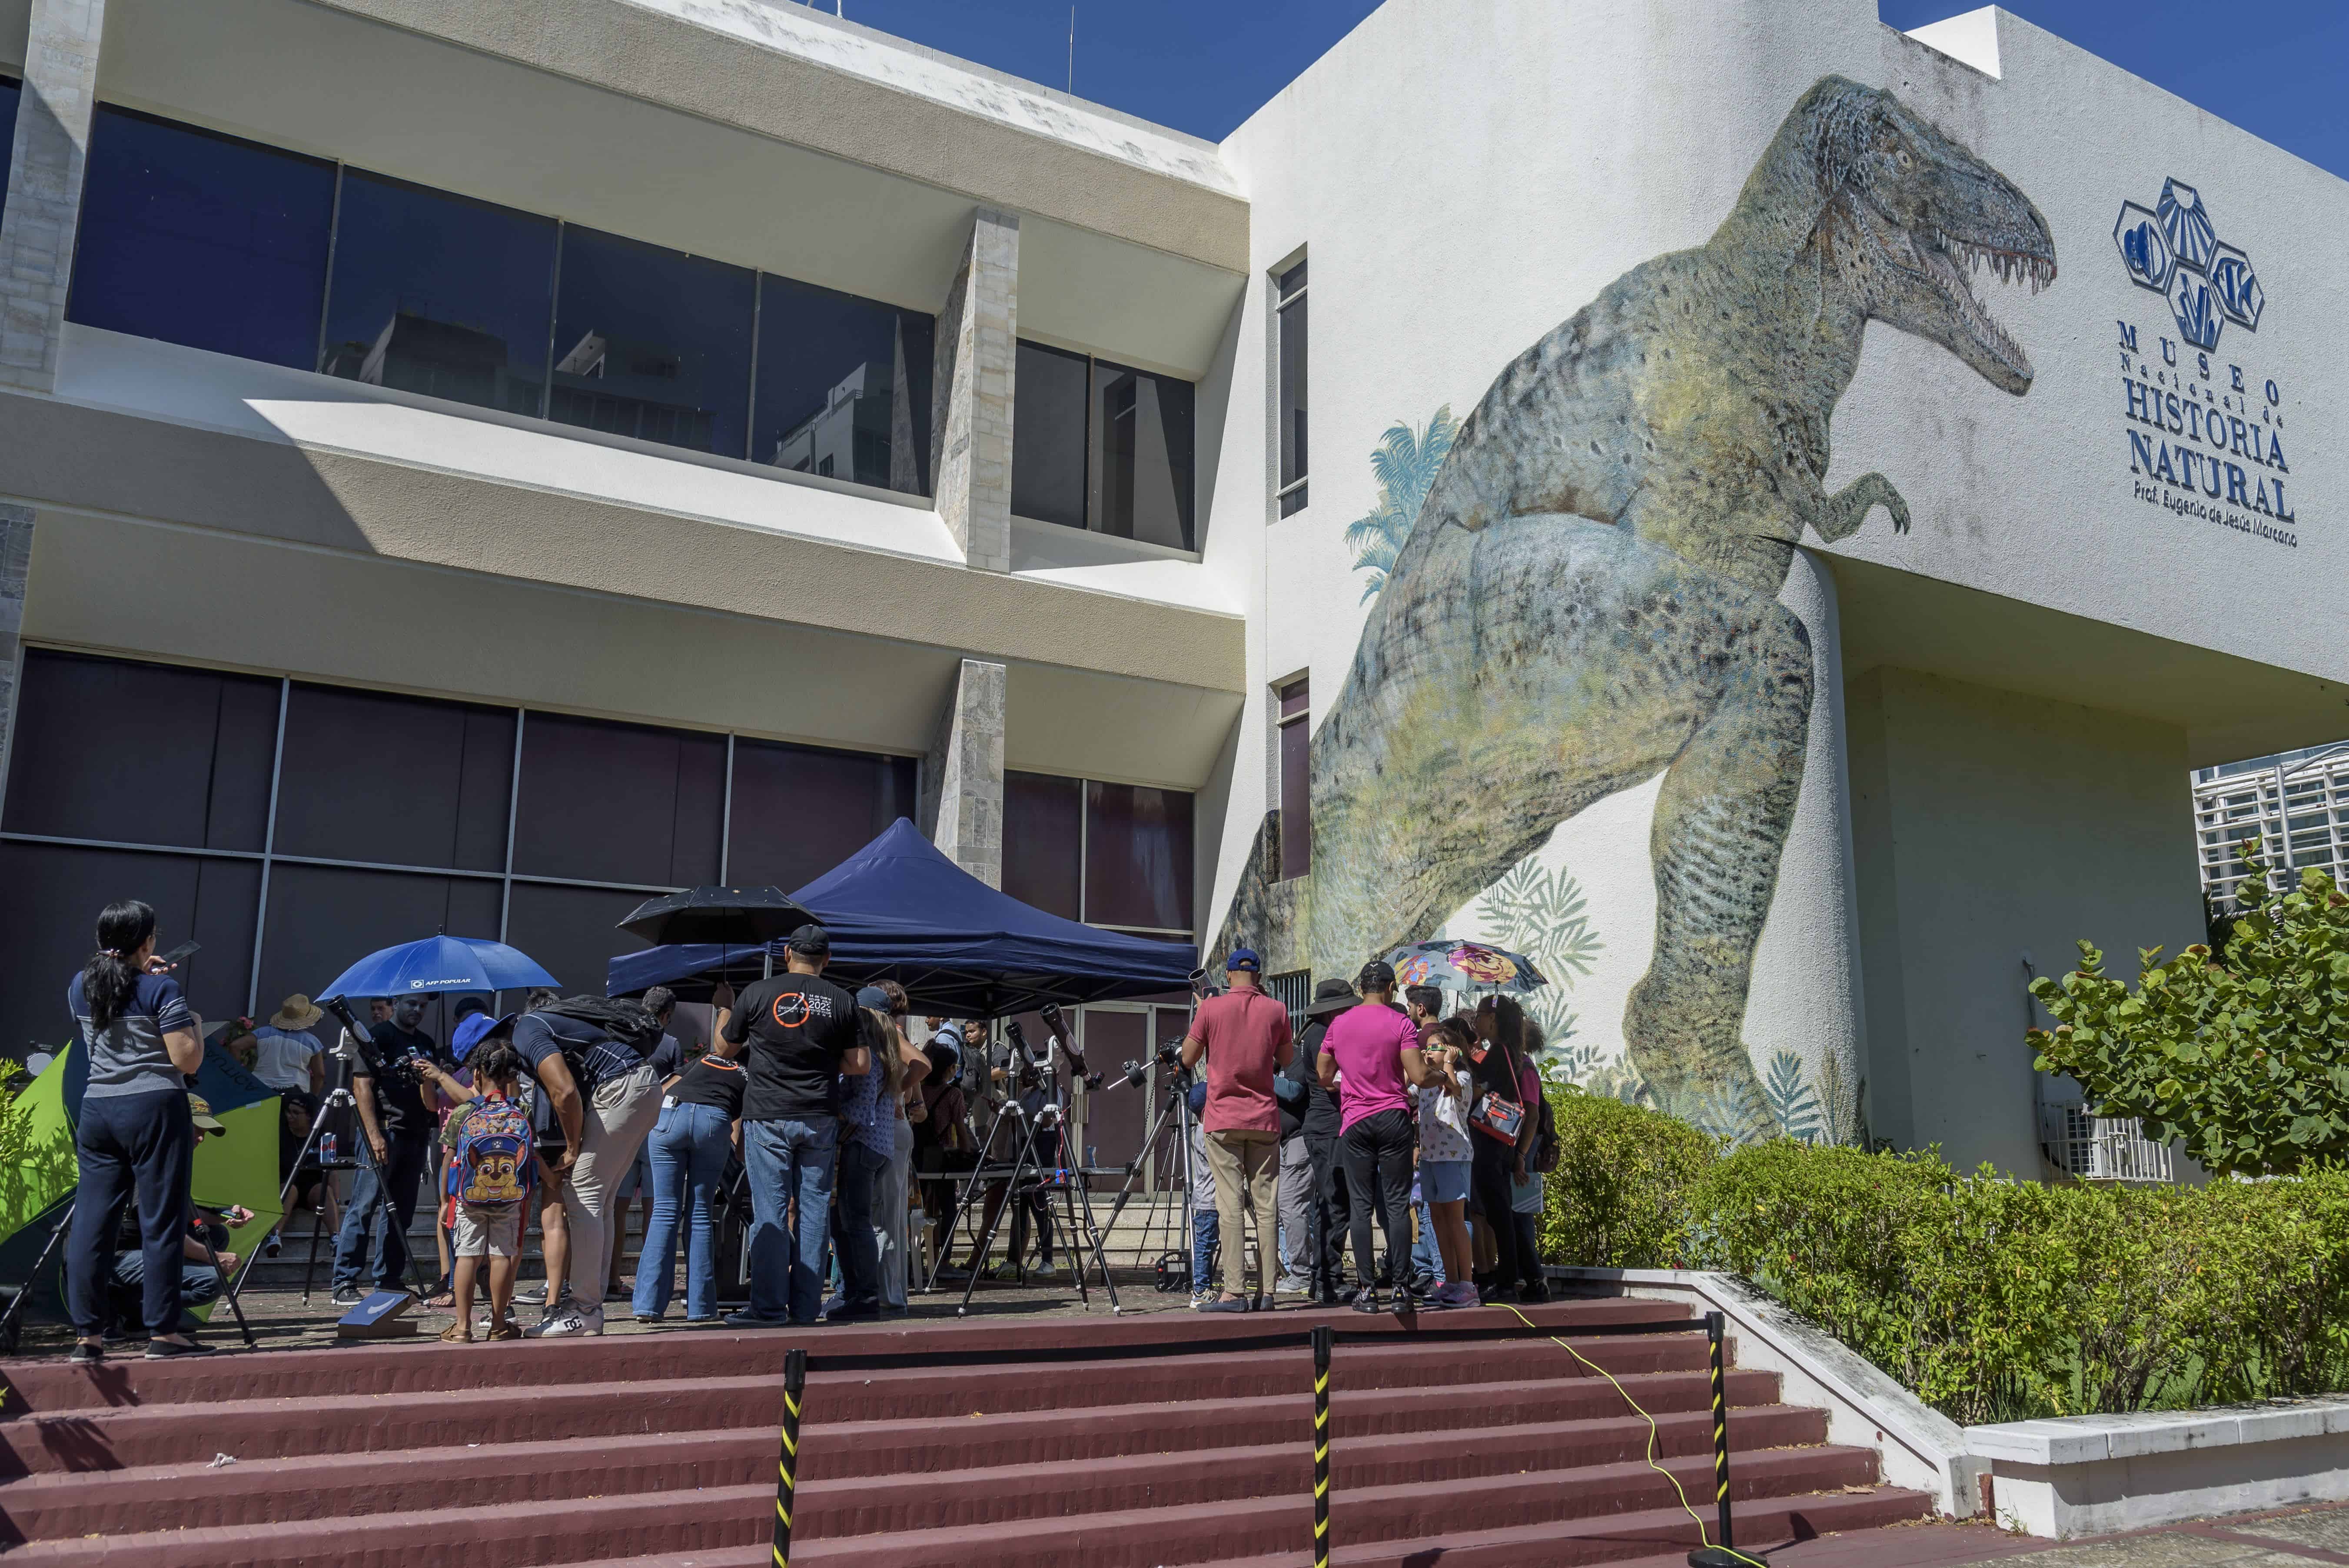 Las instalaciones exteriores del Museo Nacional de Historia Natural Prof. Eugenio de Jesús Marcano siempre cuentan con el espacio apropiado, así como la accesibilidad para realizar eventos como el de hoy para observar el eclipse.